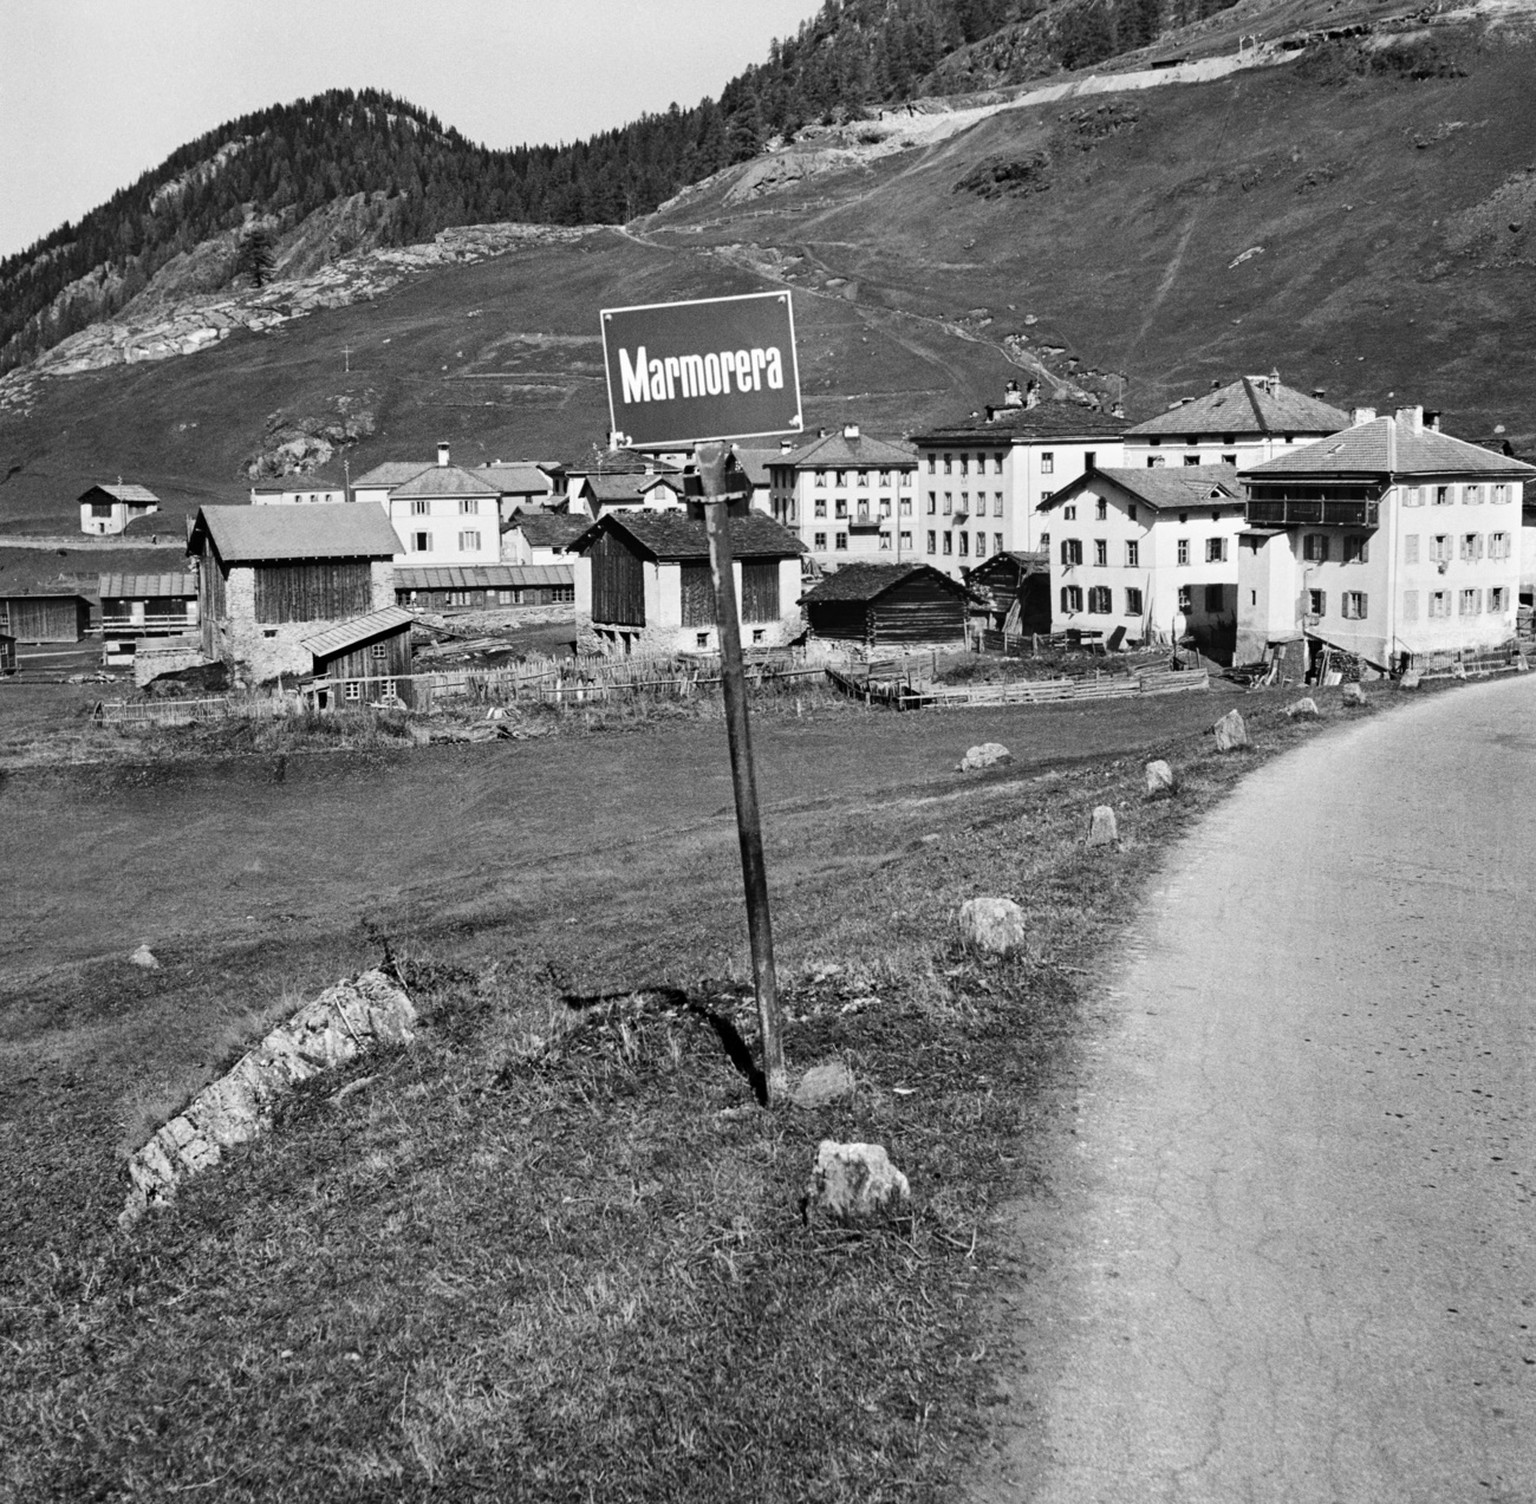 Das Doerfchen Marmorera im Kanton Graubuenden am Julierpass, aufgenommen im Oktober 1950. Die Bauarbeiten am Staudamm haben bereits begonnen und das Dorf wird in wenigen Jahren im geplanten Stausee un ...